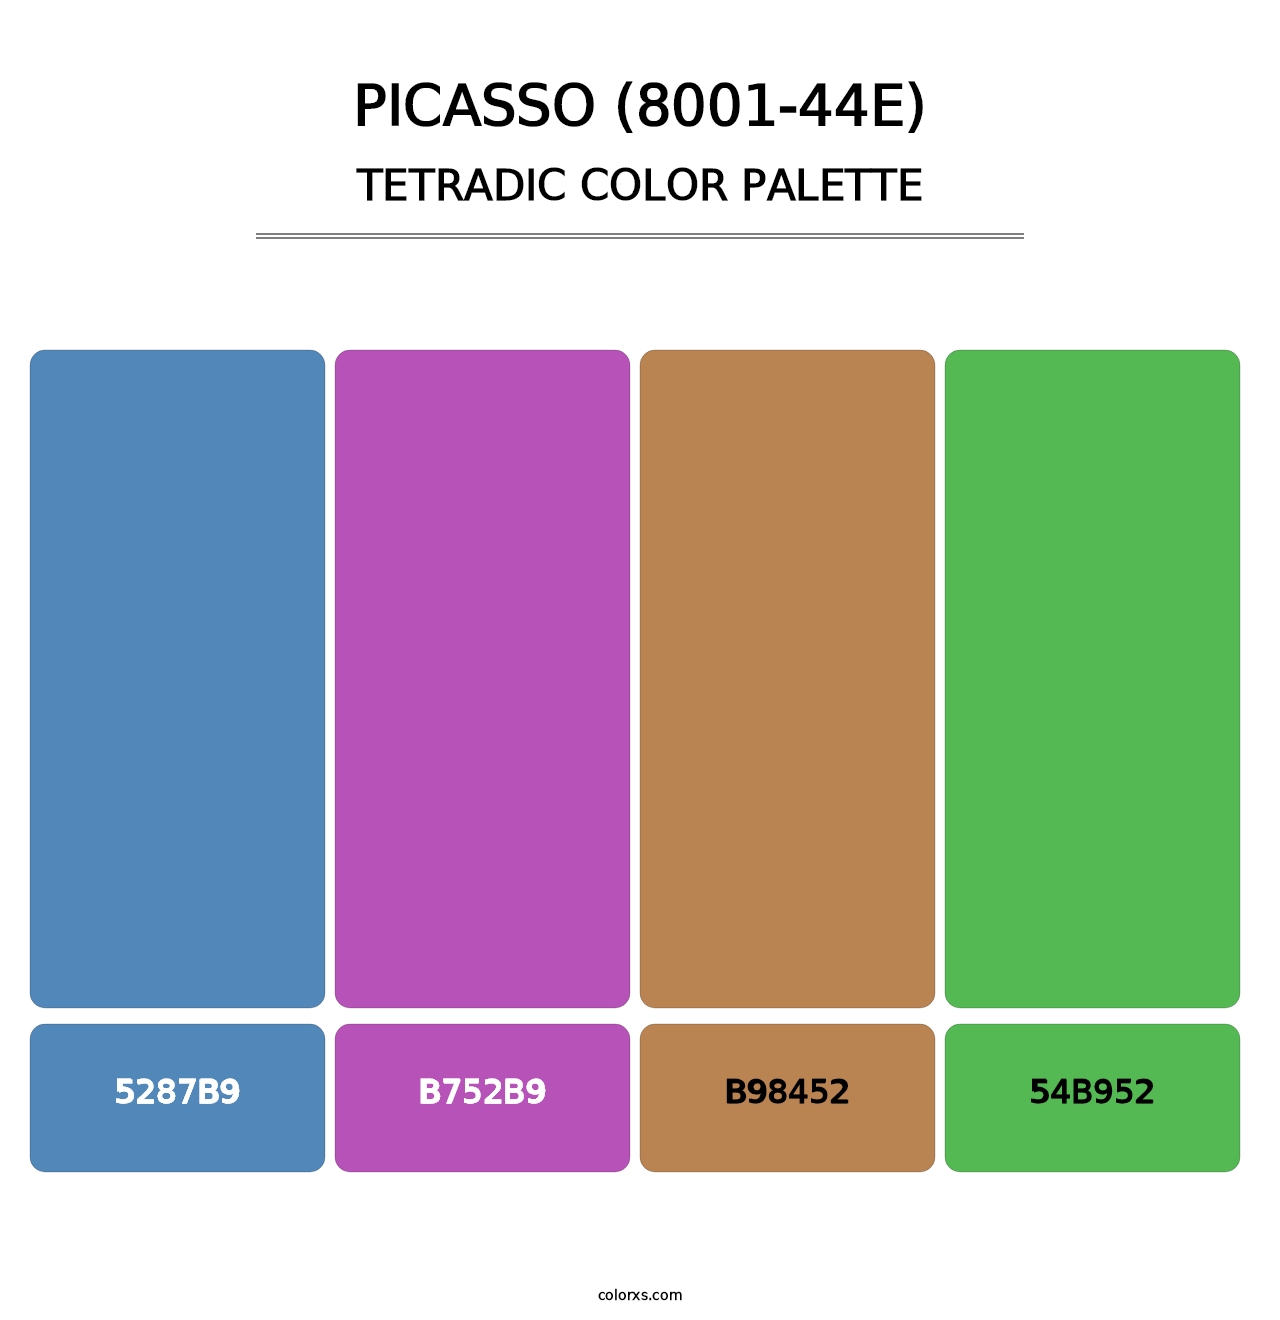 Picasso (8001-44E) - Tetradic Color Palette